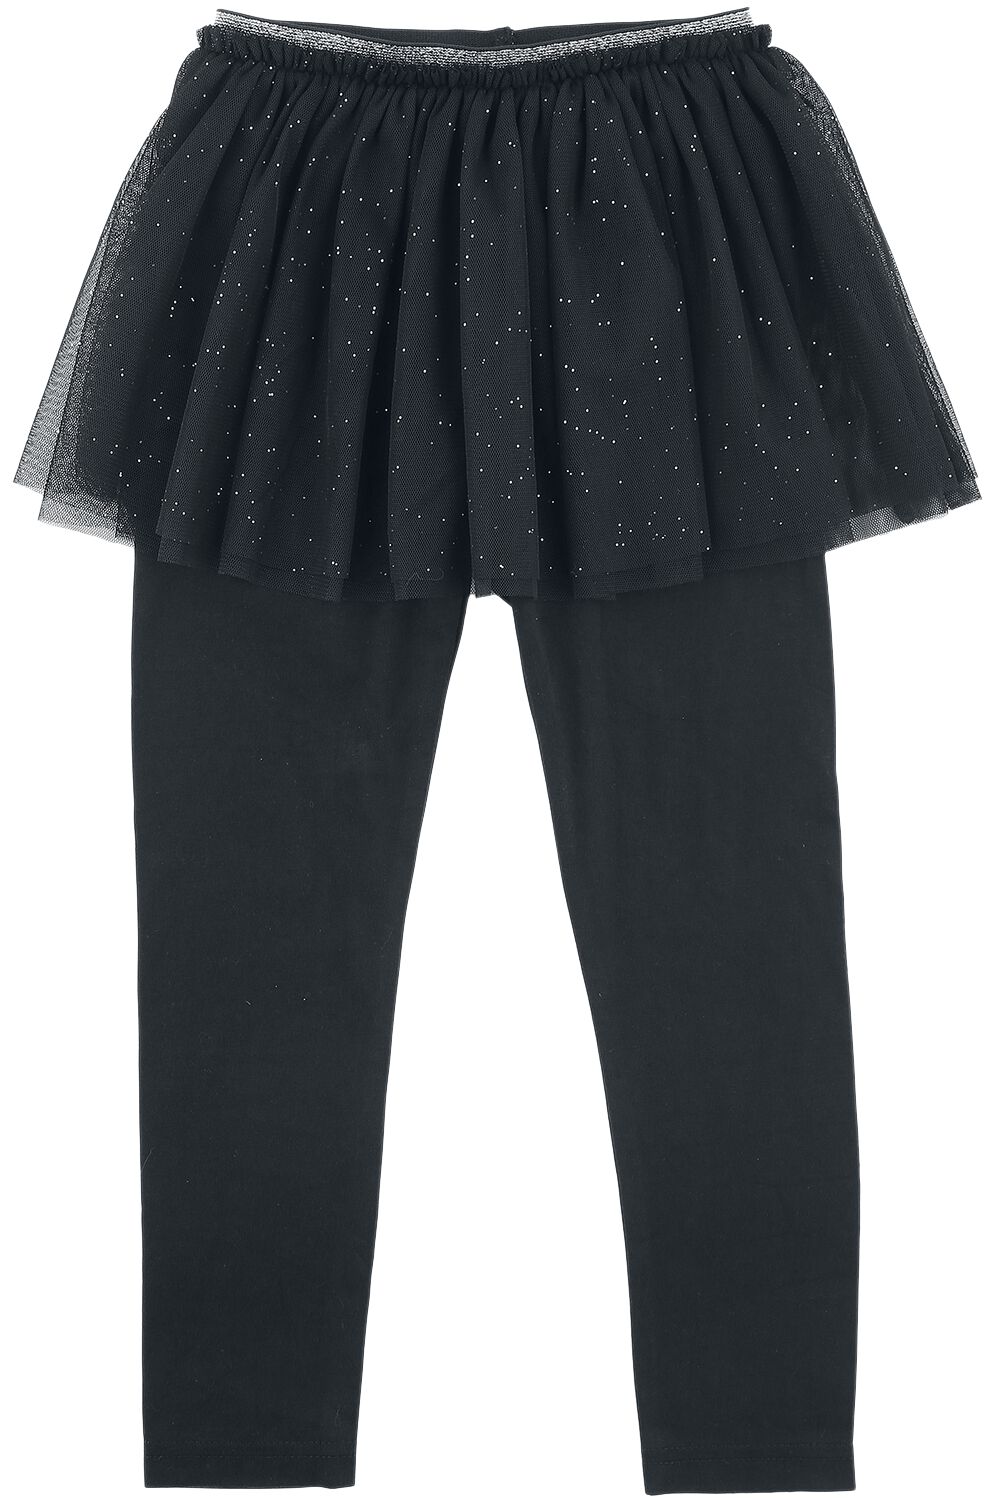 EMP Basic Collection Glittery Tulle Skirt with Leggings Leggings black